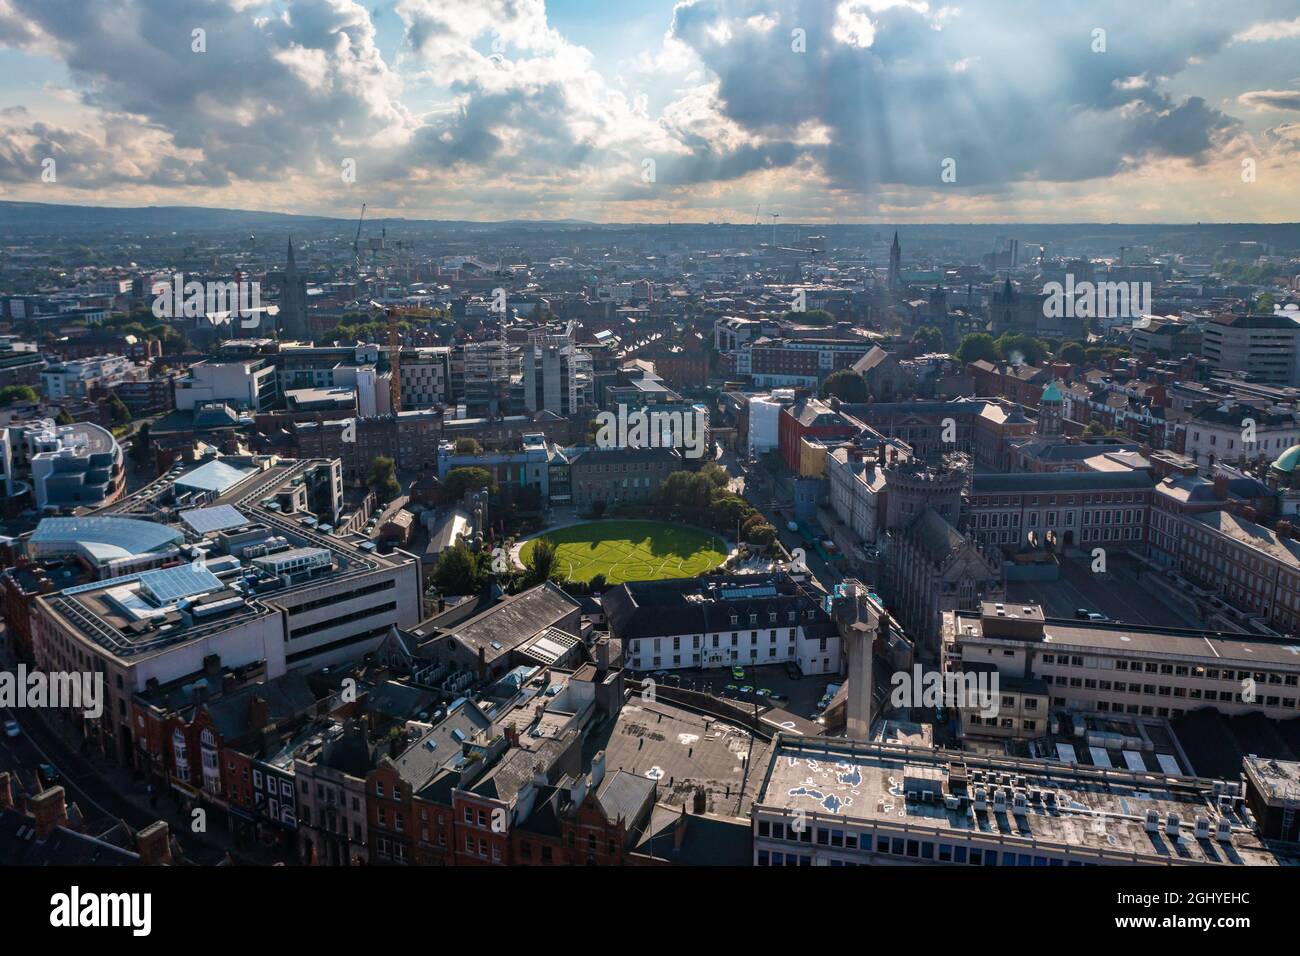 Vista aerea dello skyline di Dublino con stadio, parco giochi ed edifici residenziali e commerciali sotto un cielo nuvoloso al tramonto Foto Stock